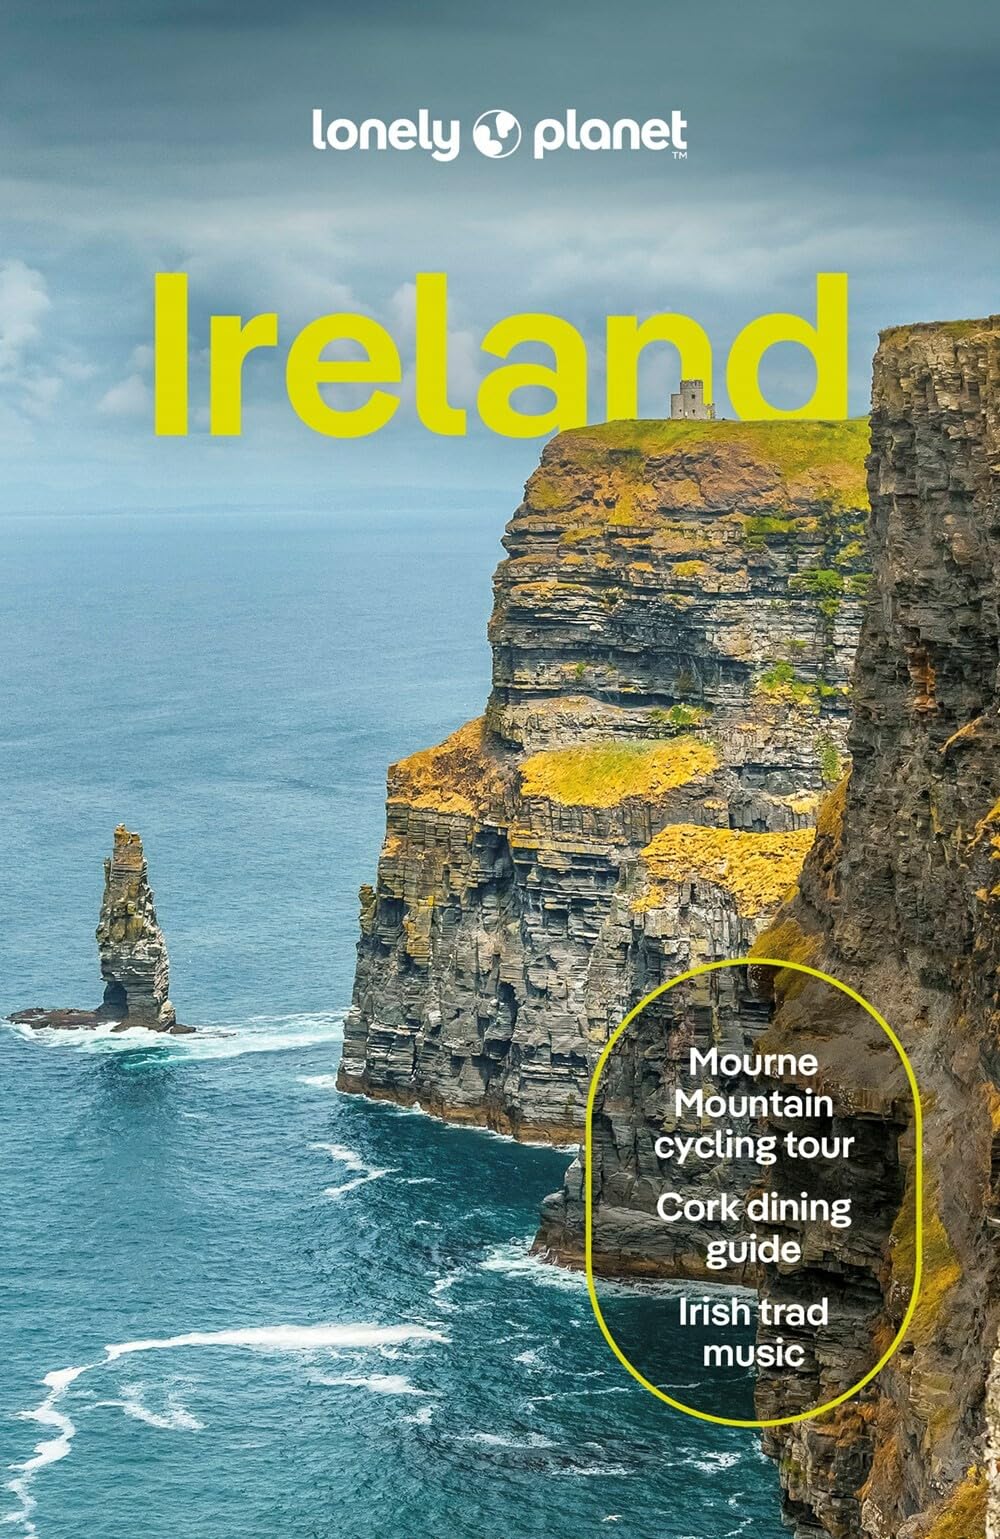 מדריך אירלנד לונלי פלנט 16